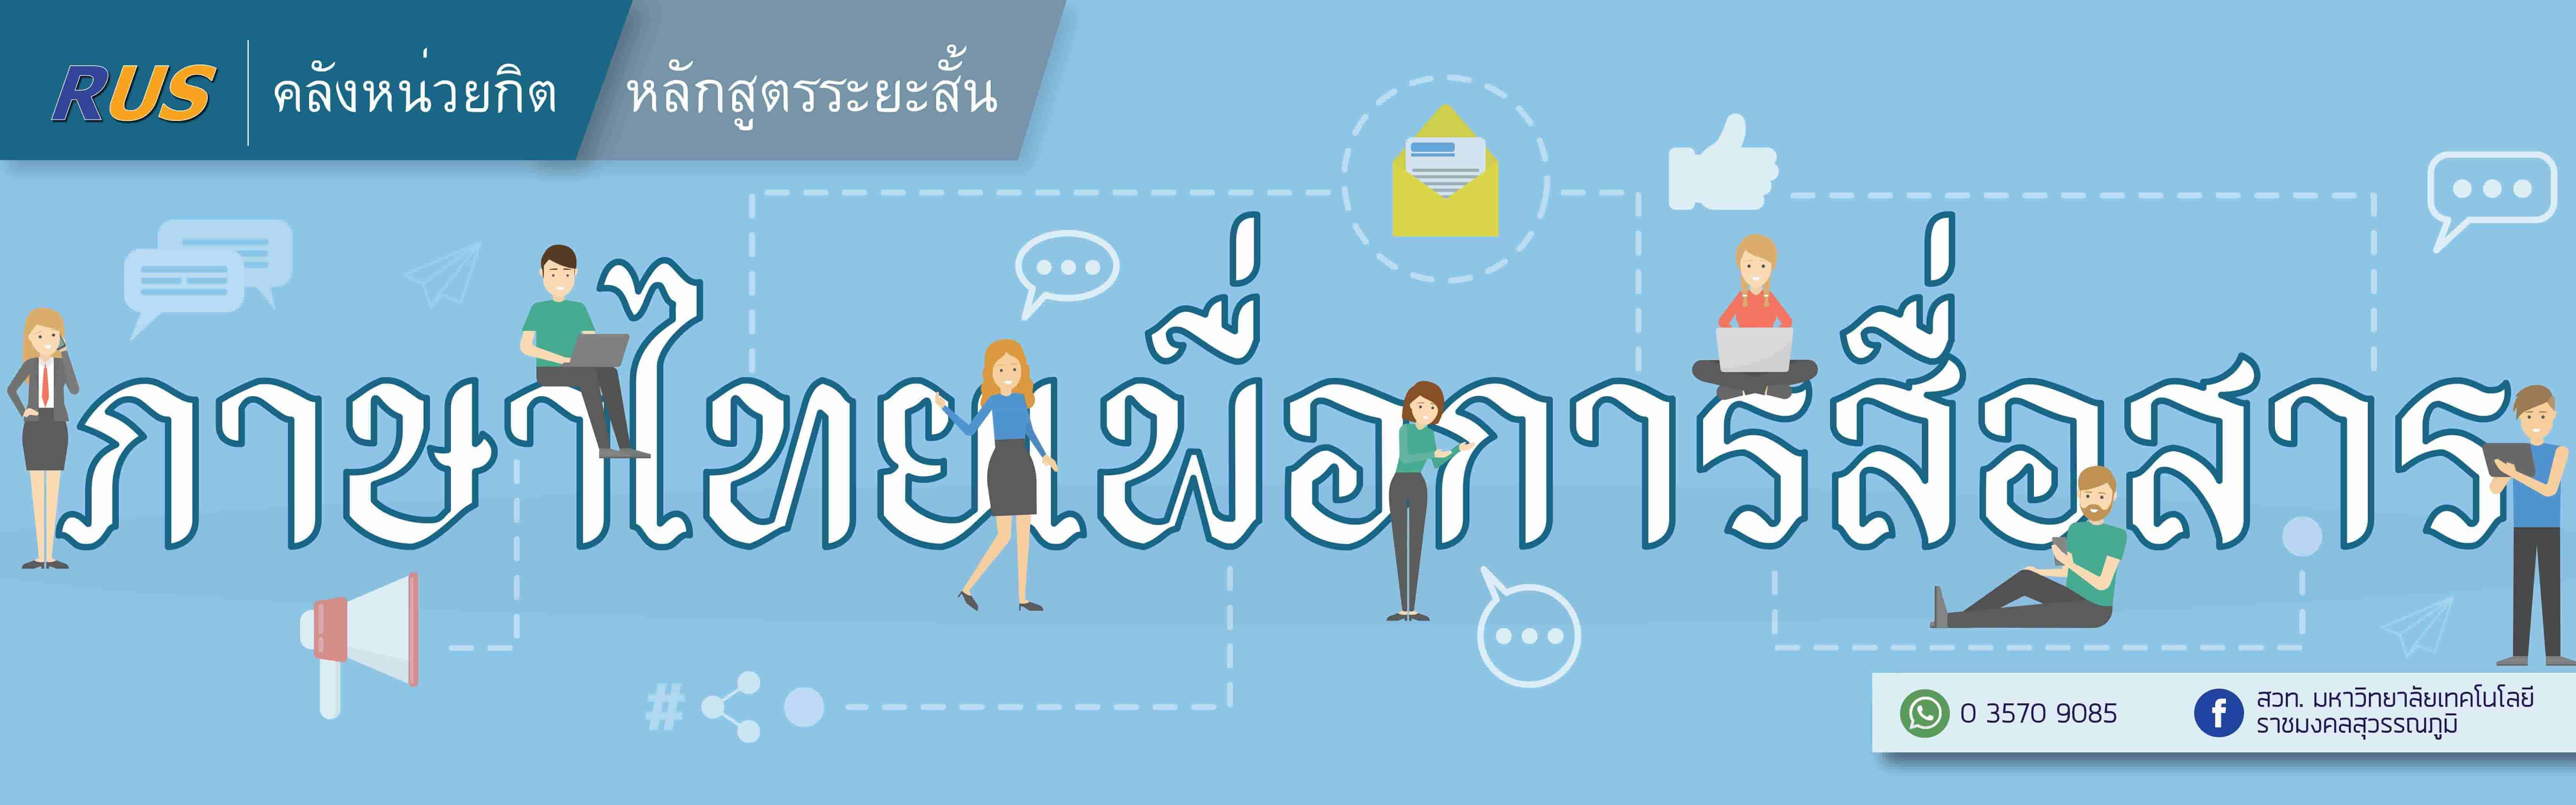 หลักสูตรระยะสั้น : รายวิชาภาษาไทยเพื่อการสื่อสาร